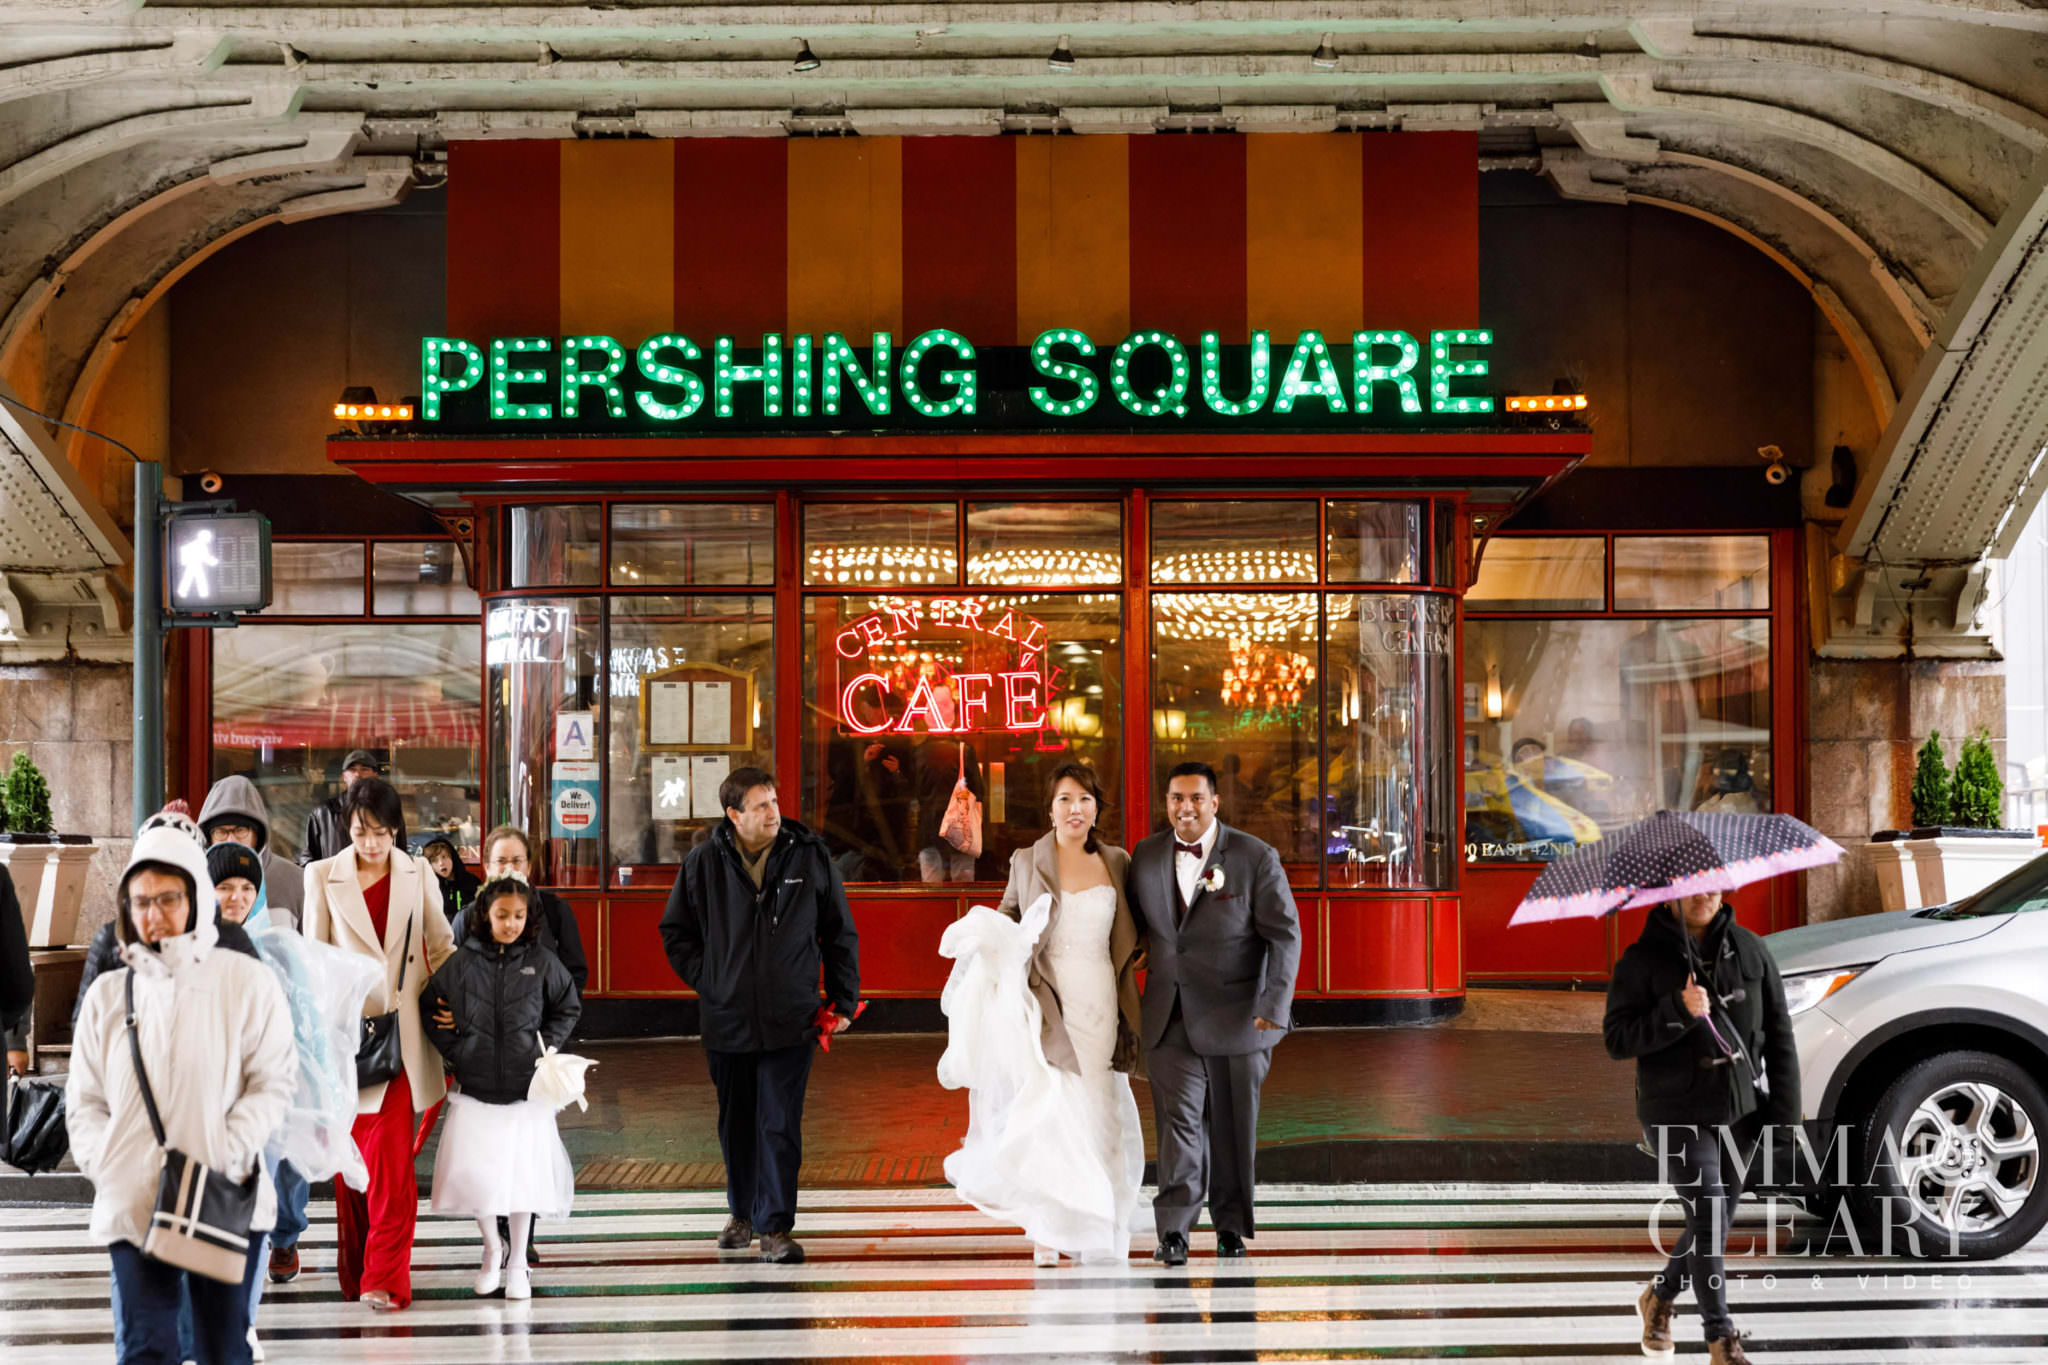 Pershing square wedding